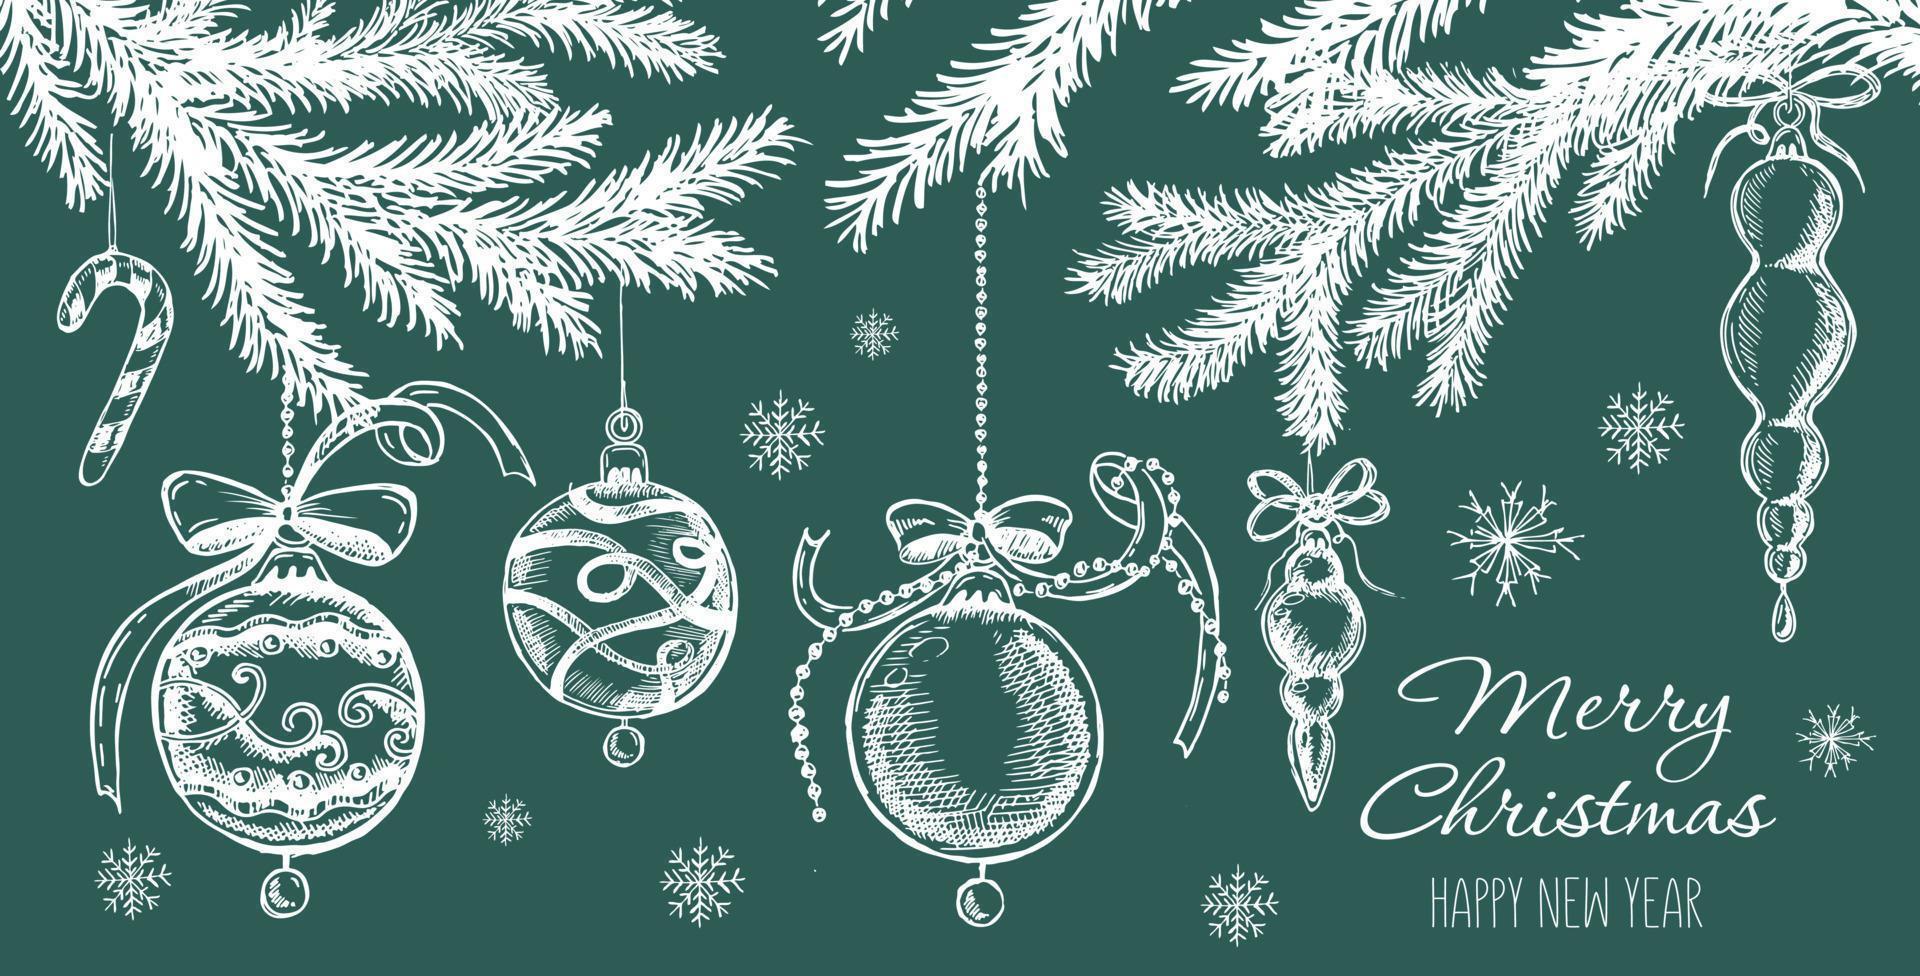 weihnachtsset im skizzenstil. handgezeichnete Abbildung. vektor